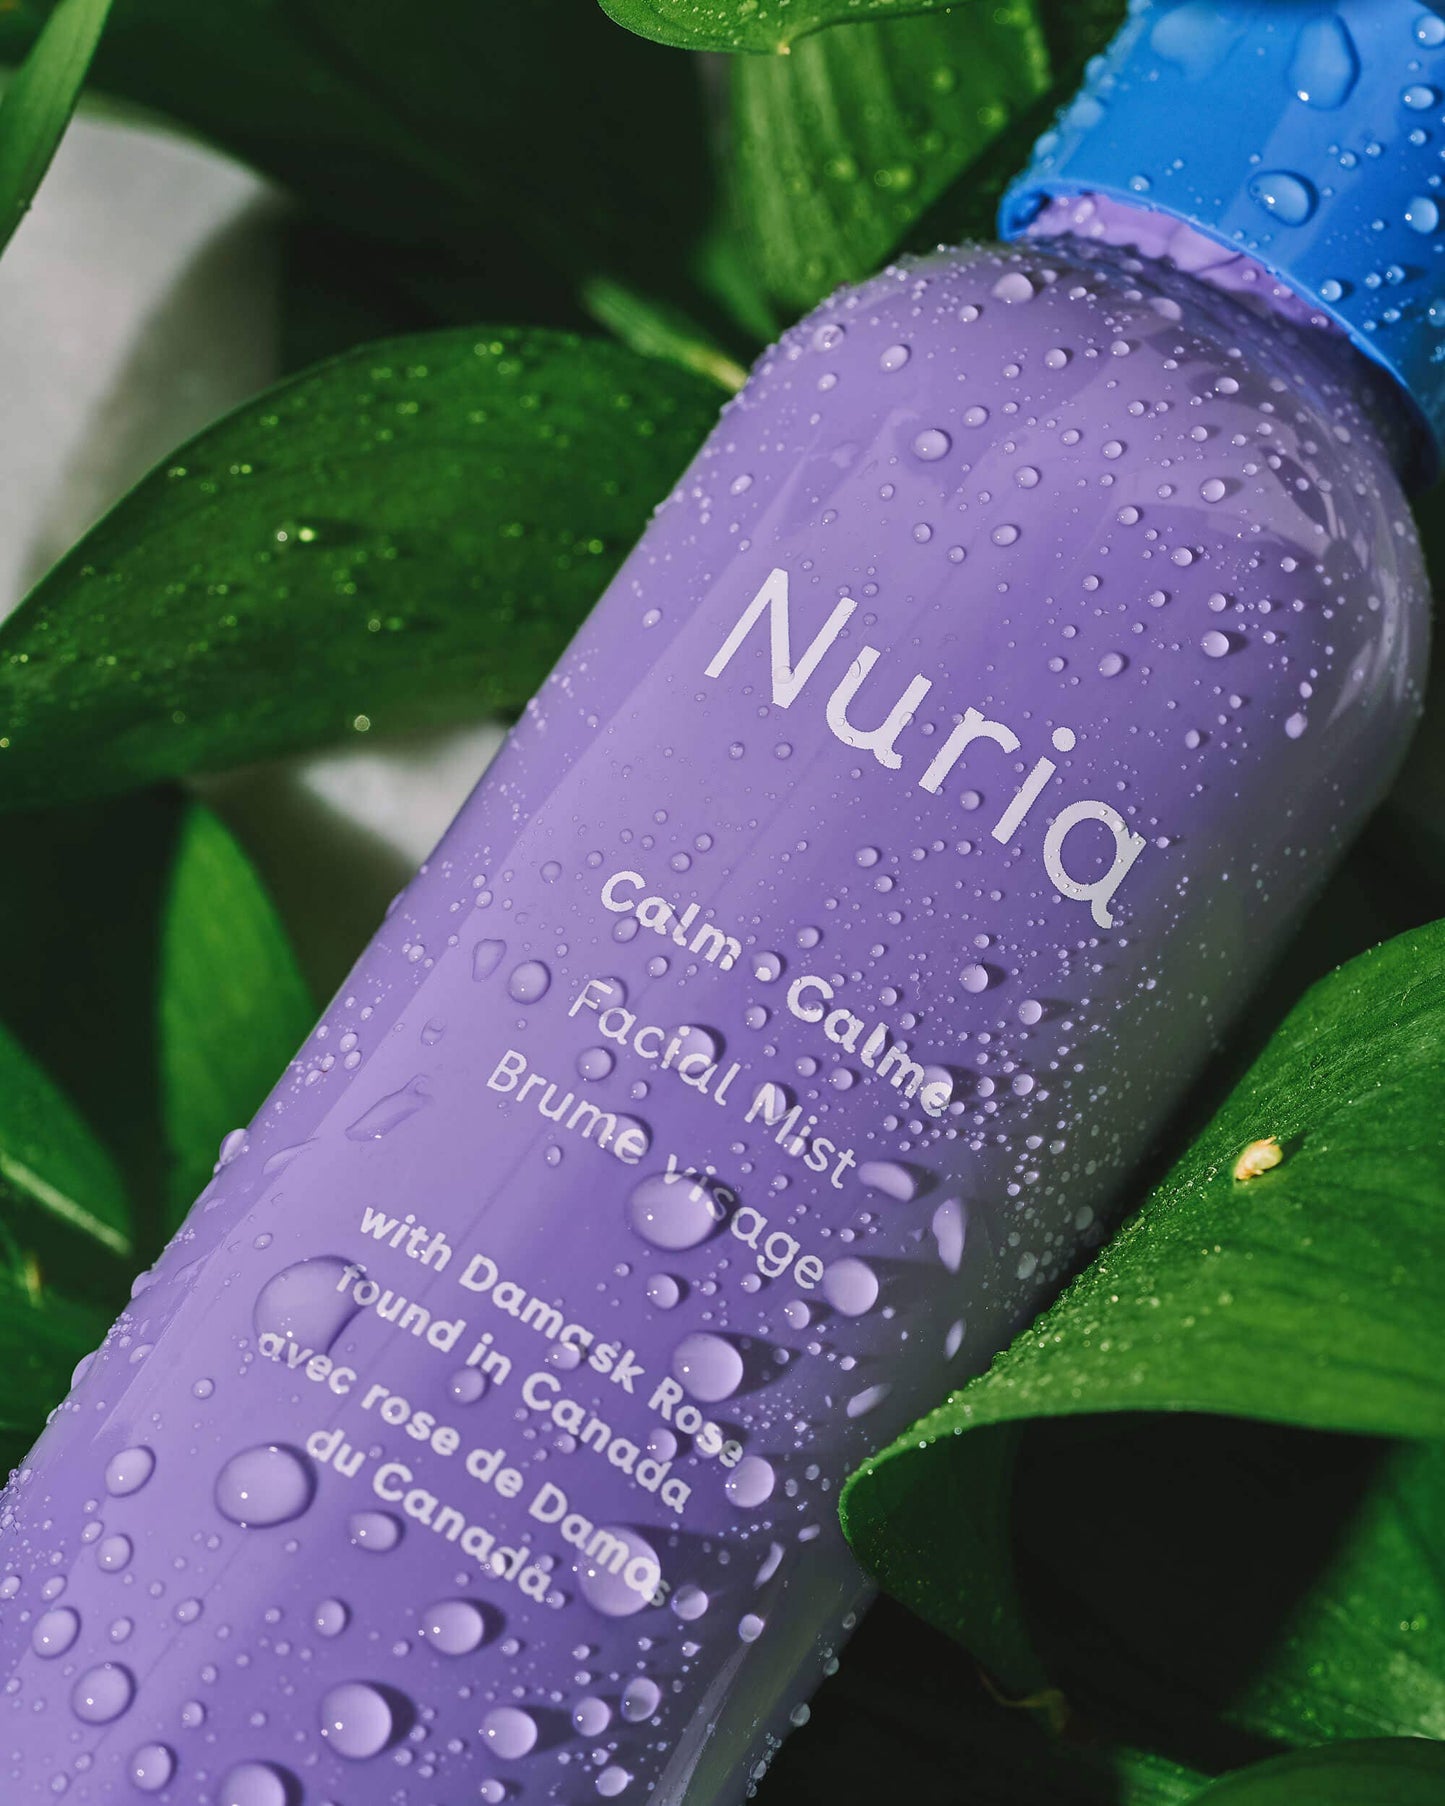 Nuria - Calm Facial Hydration + Makeup Setting Spray